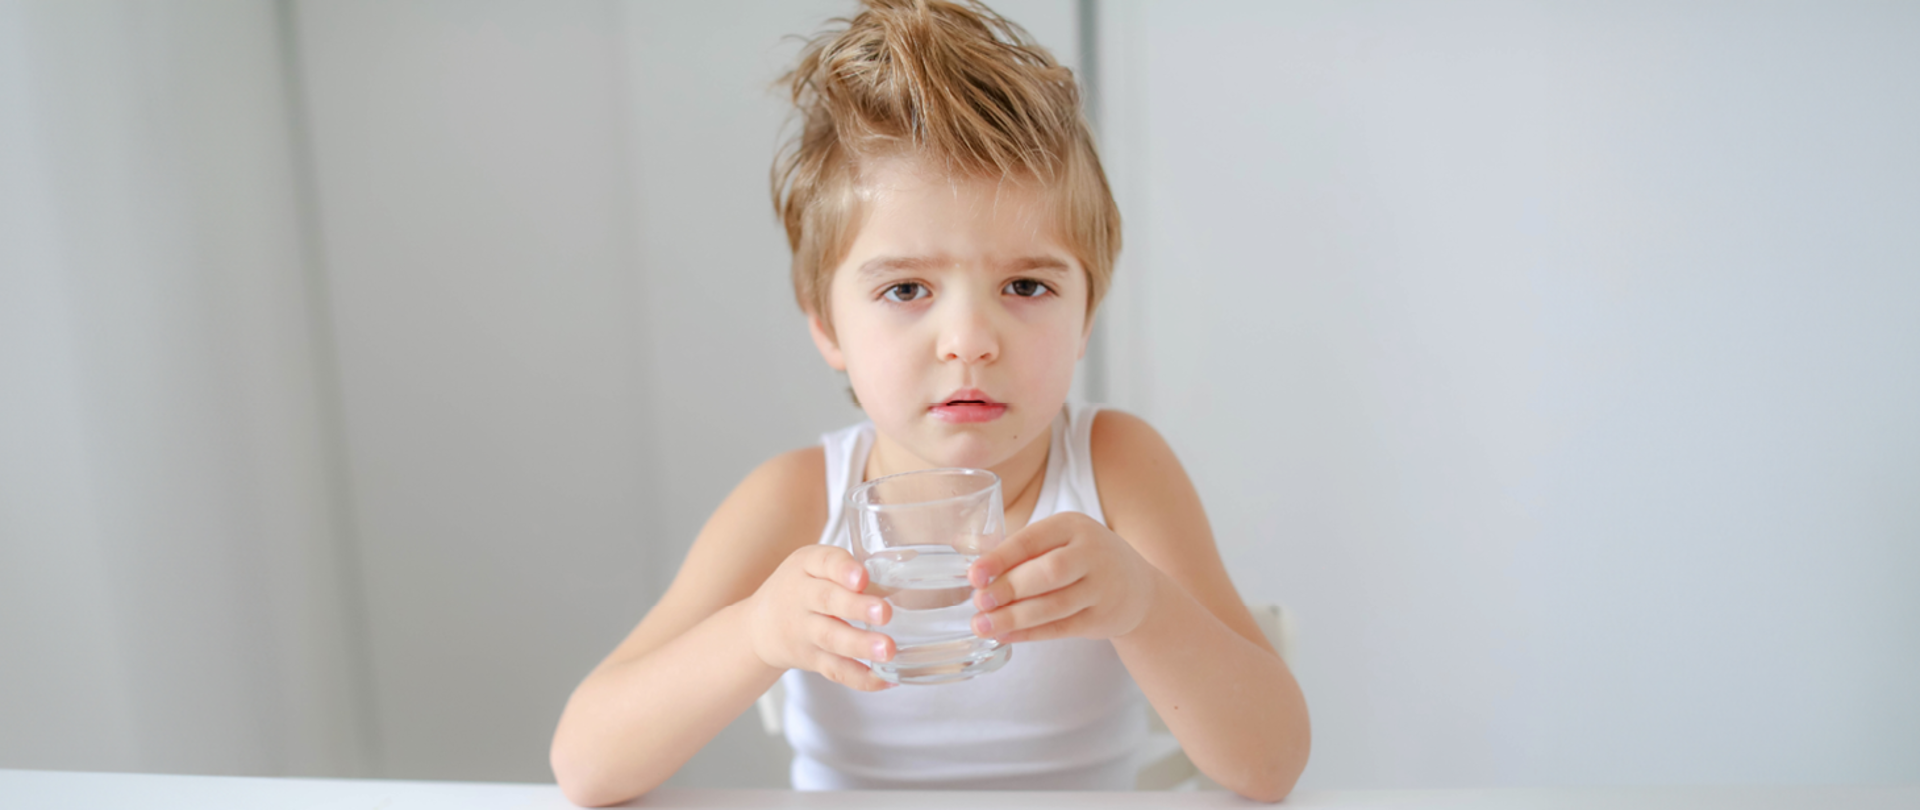 Dlaczego wciąż przypominamy o piciu wody?